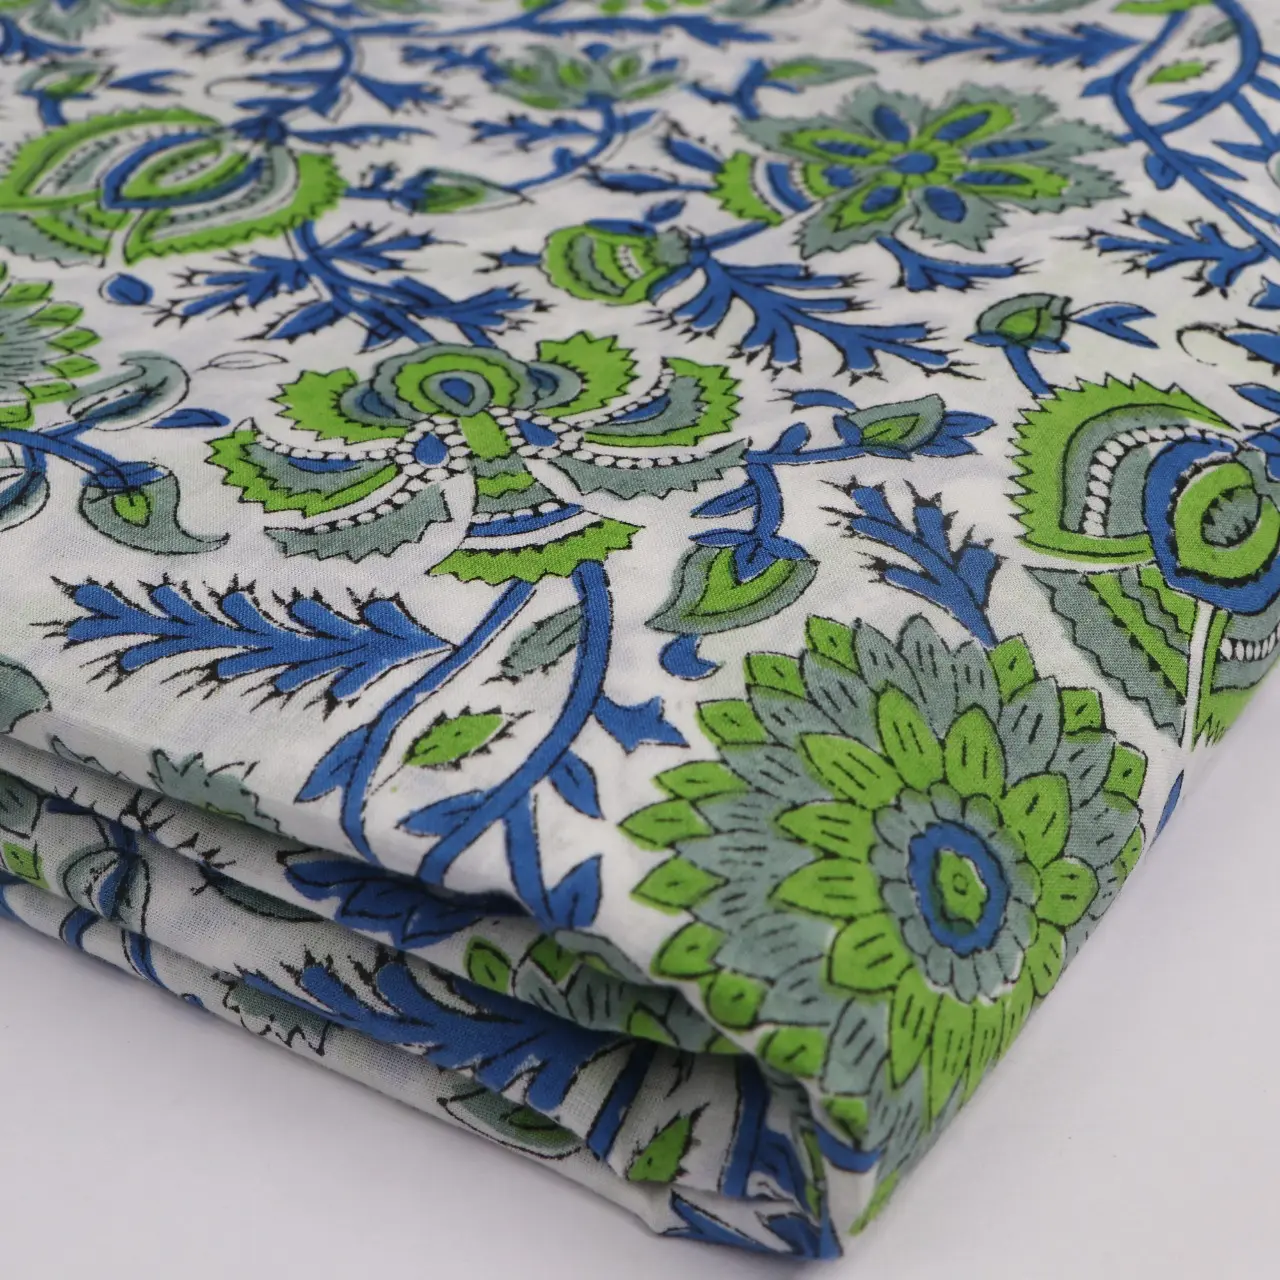 Tecido de algodão impresso floral natural, tela impressa de jaipur indiano corridas